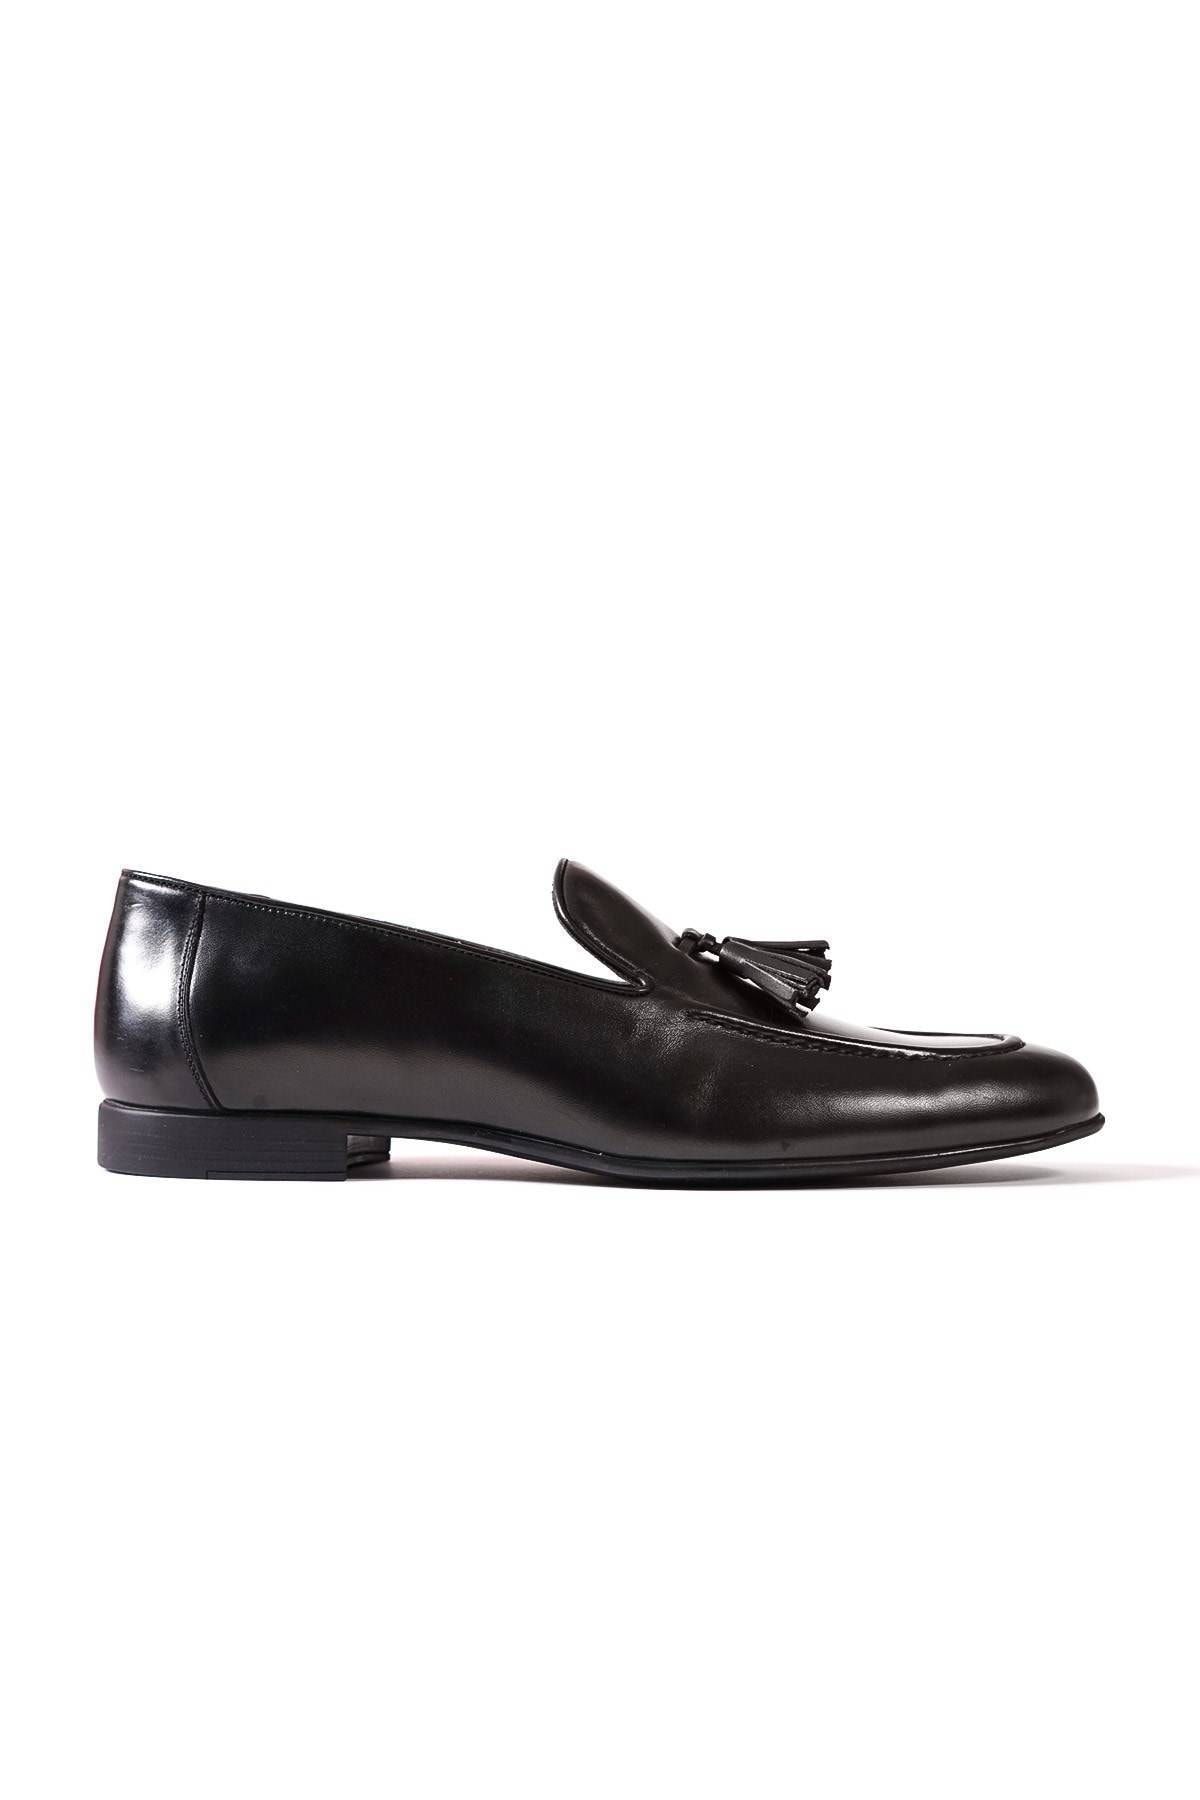 Genel Markalar Seranad St Bağcıksız Hakiki Deri Püsküllü Corcik Kauçuk Taban Erkek Klasik Ayakkabı Siyah